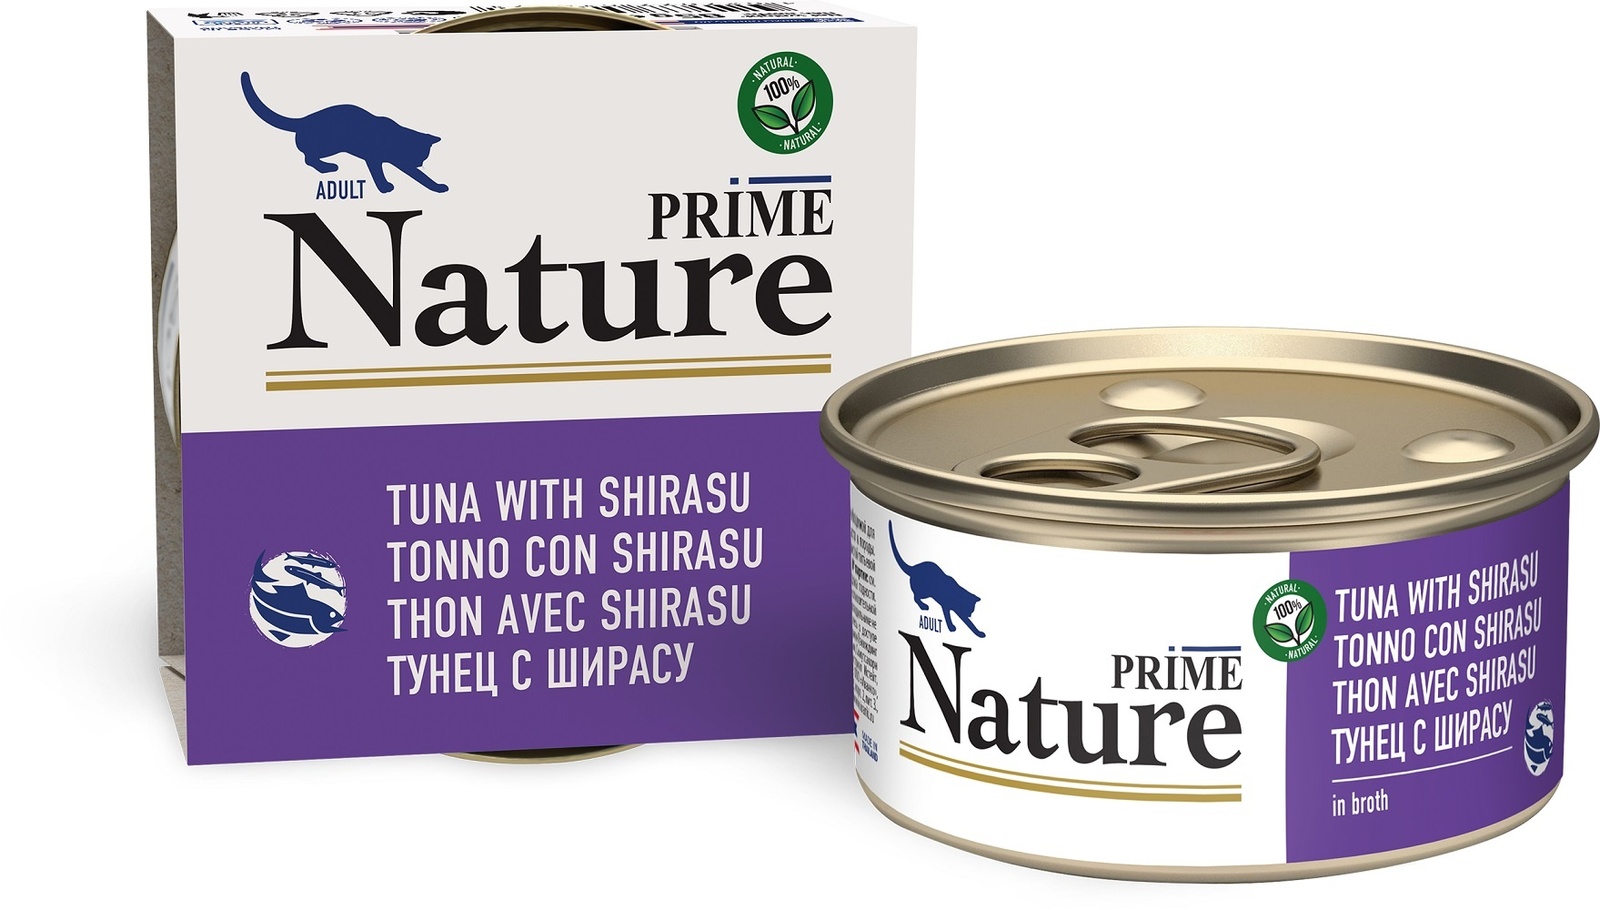 Prime Nature консервы для кошек: тунец с ширасу в бульоне (85 г) Prime Nature консервы для кошек: тунец с ширасу в бульоне (85 г) - фото 1